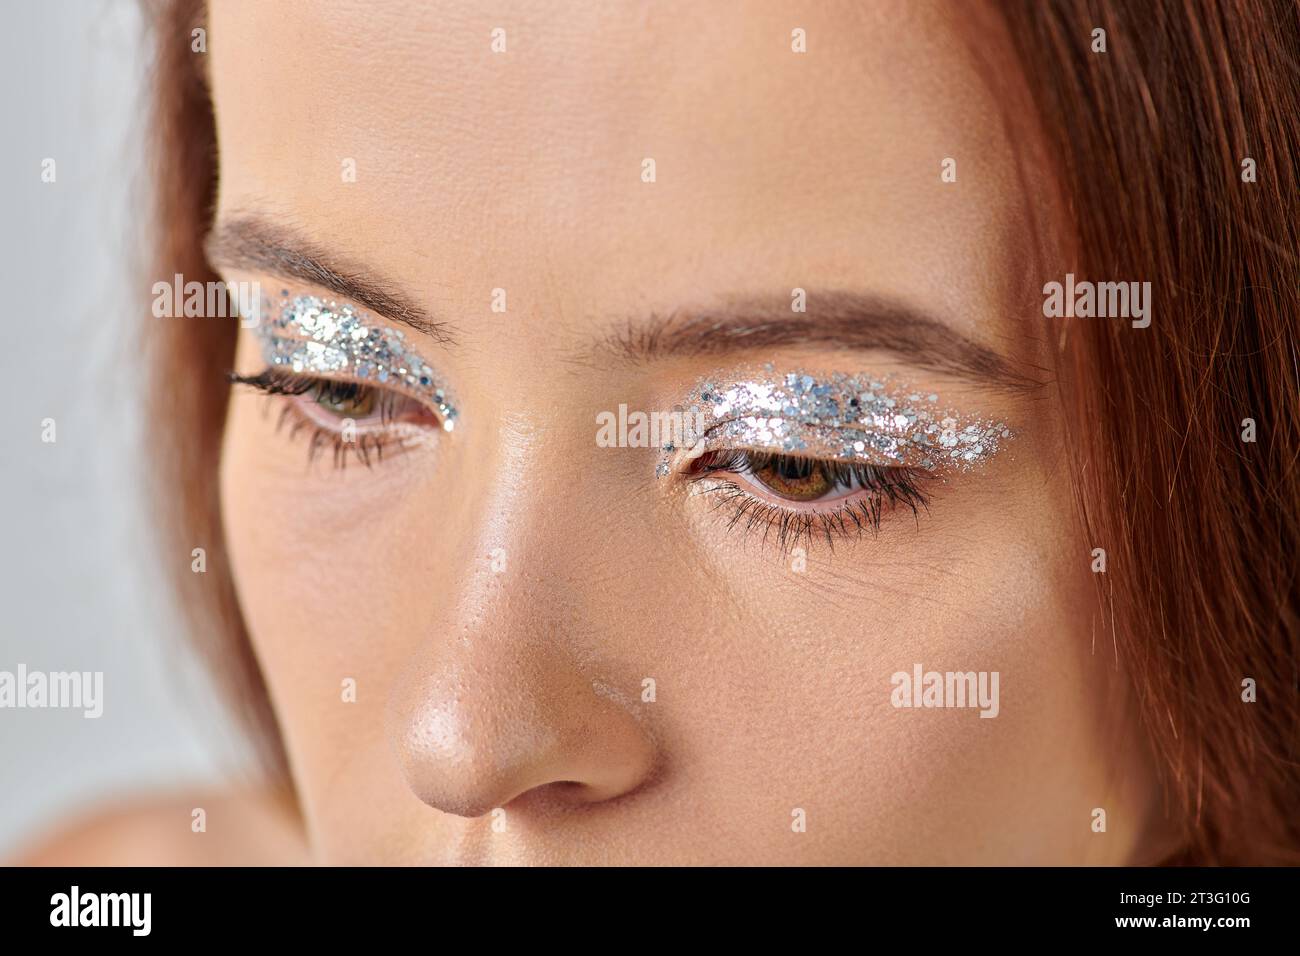 Nahaufnahme einer schönen jungen Frau mit Feiertagsschminke, schimmerndem Lidschatten, frohe Weihnachten Stockfoto